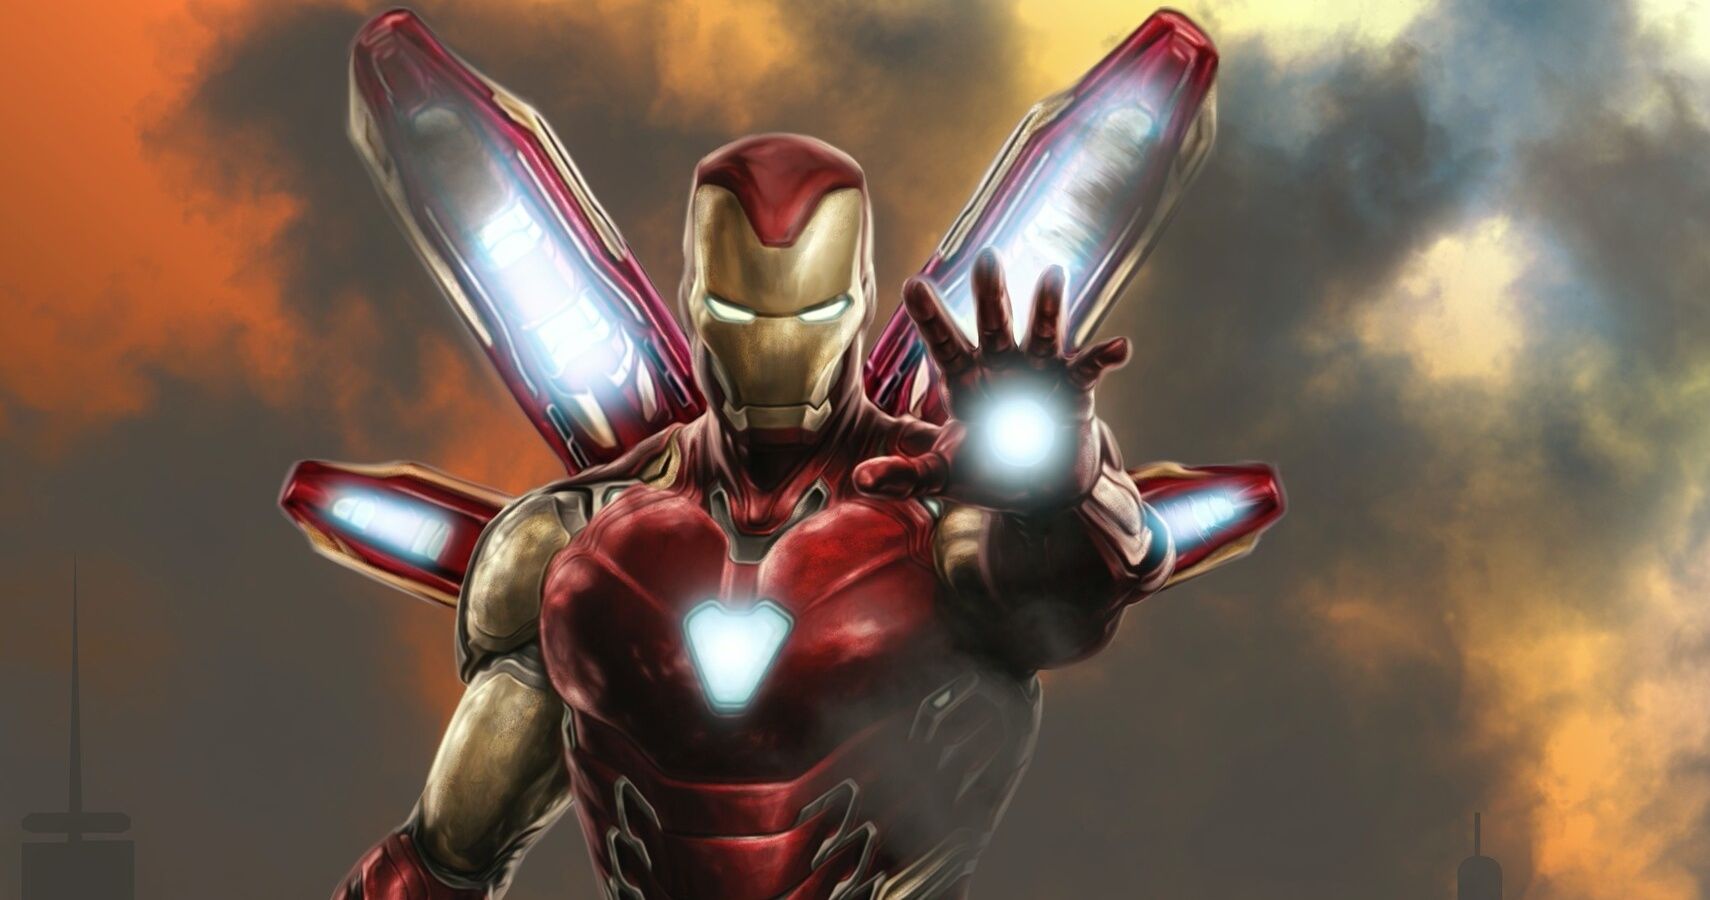 Iron Man Takes Aim